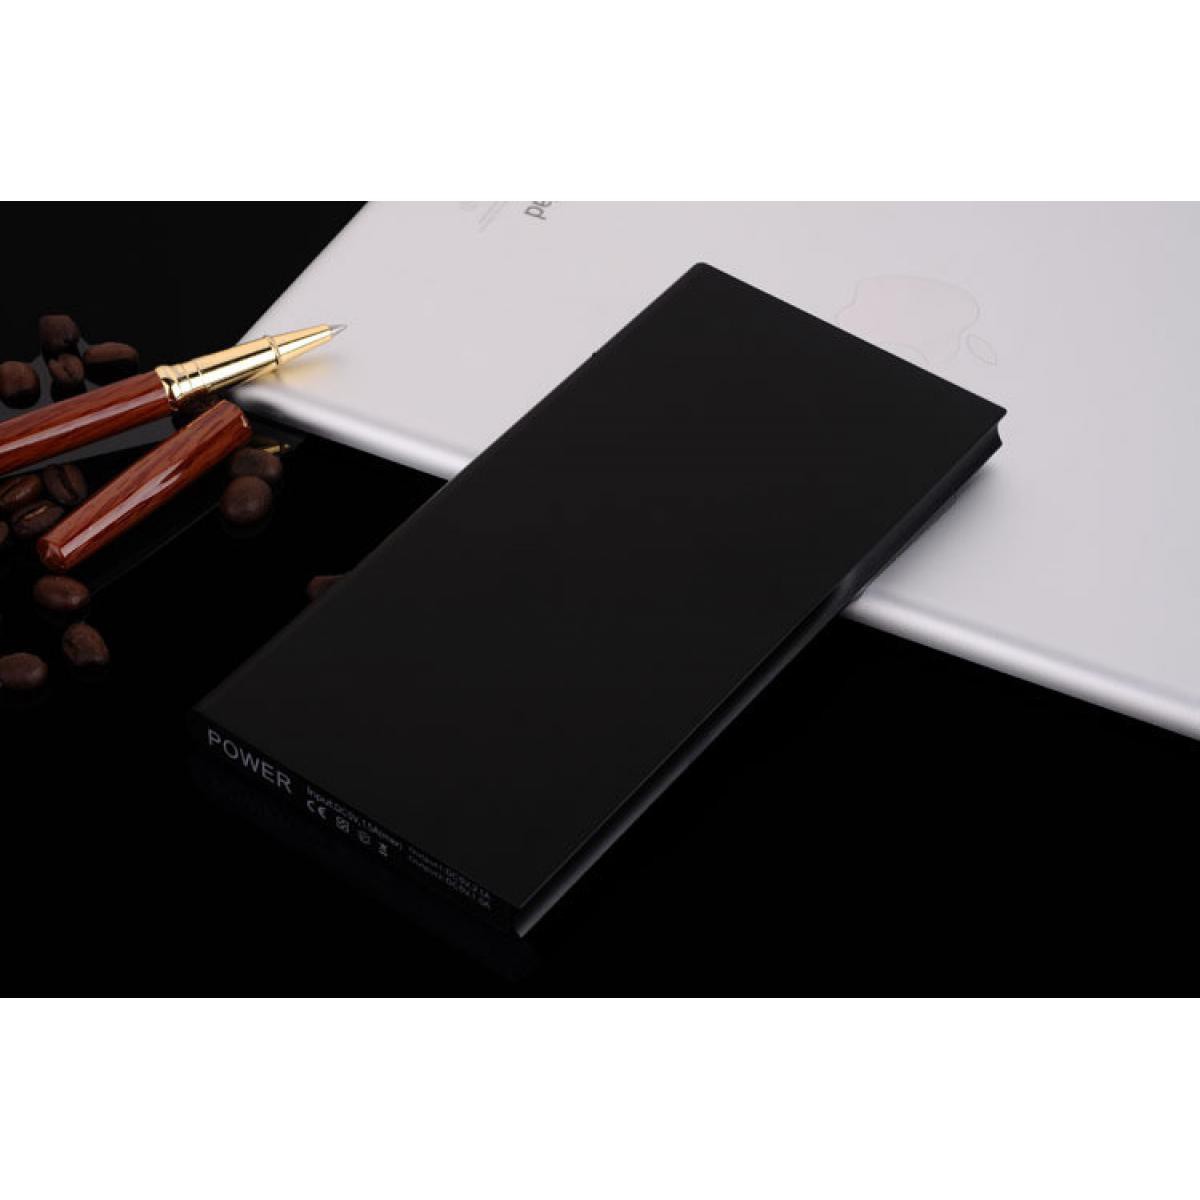 Shot - Batterie Externe Plate pour HUAWEI Y6 2019 Smartphone Tablette Chargeur Power Bank 6000mAh 2 Port USB (NOIR) - Chargeur secteur téléphone